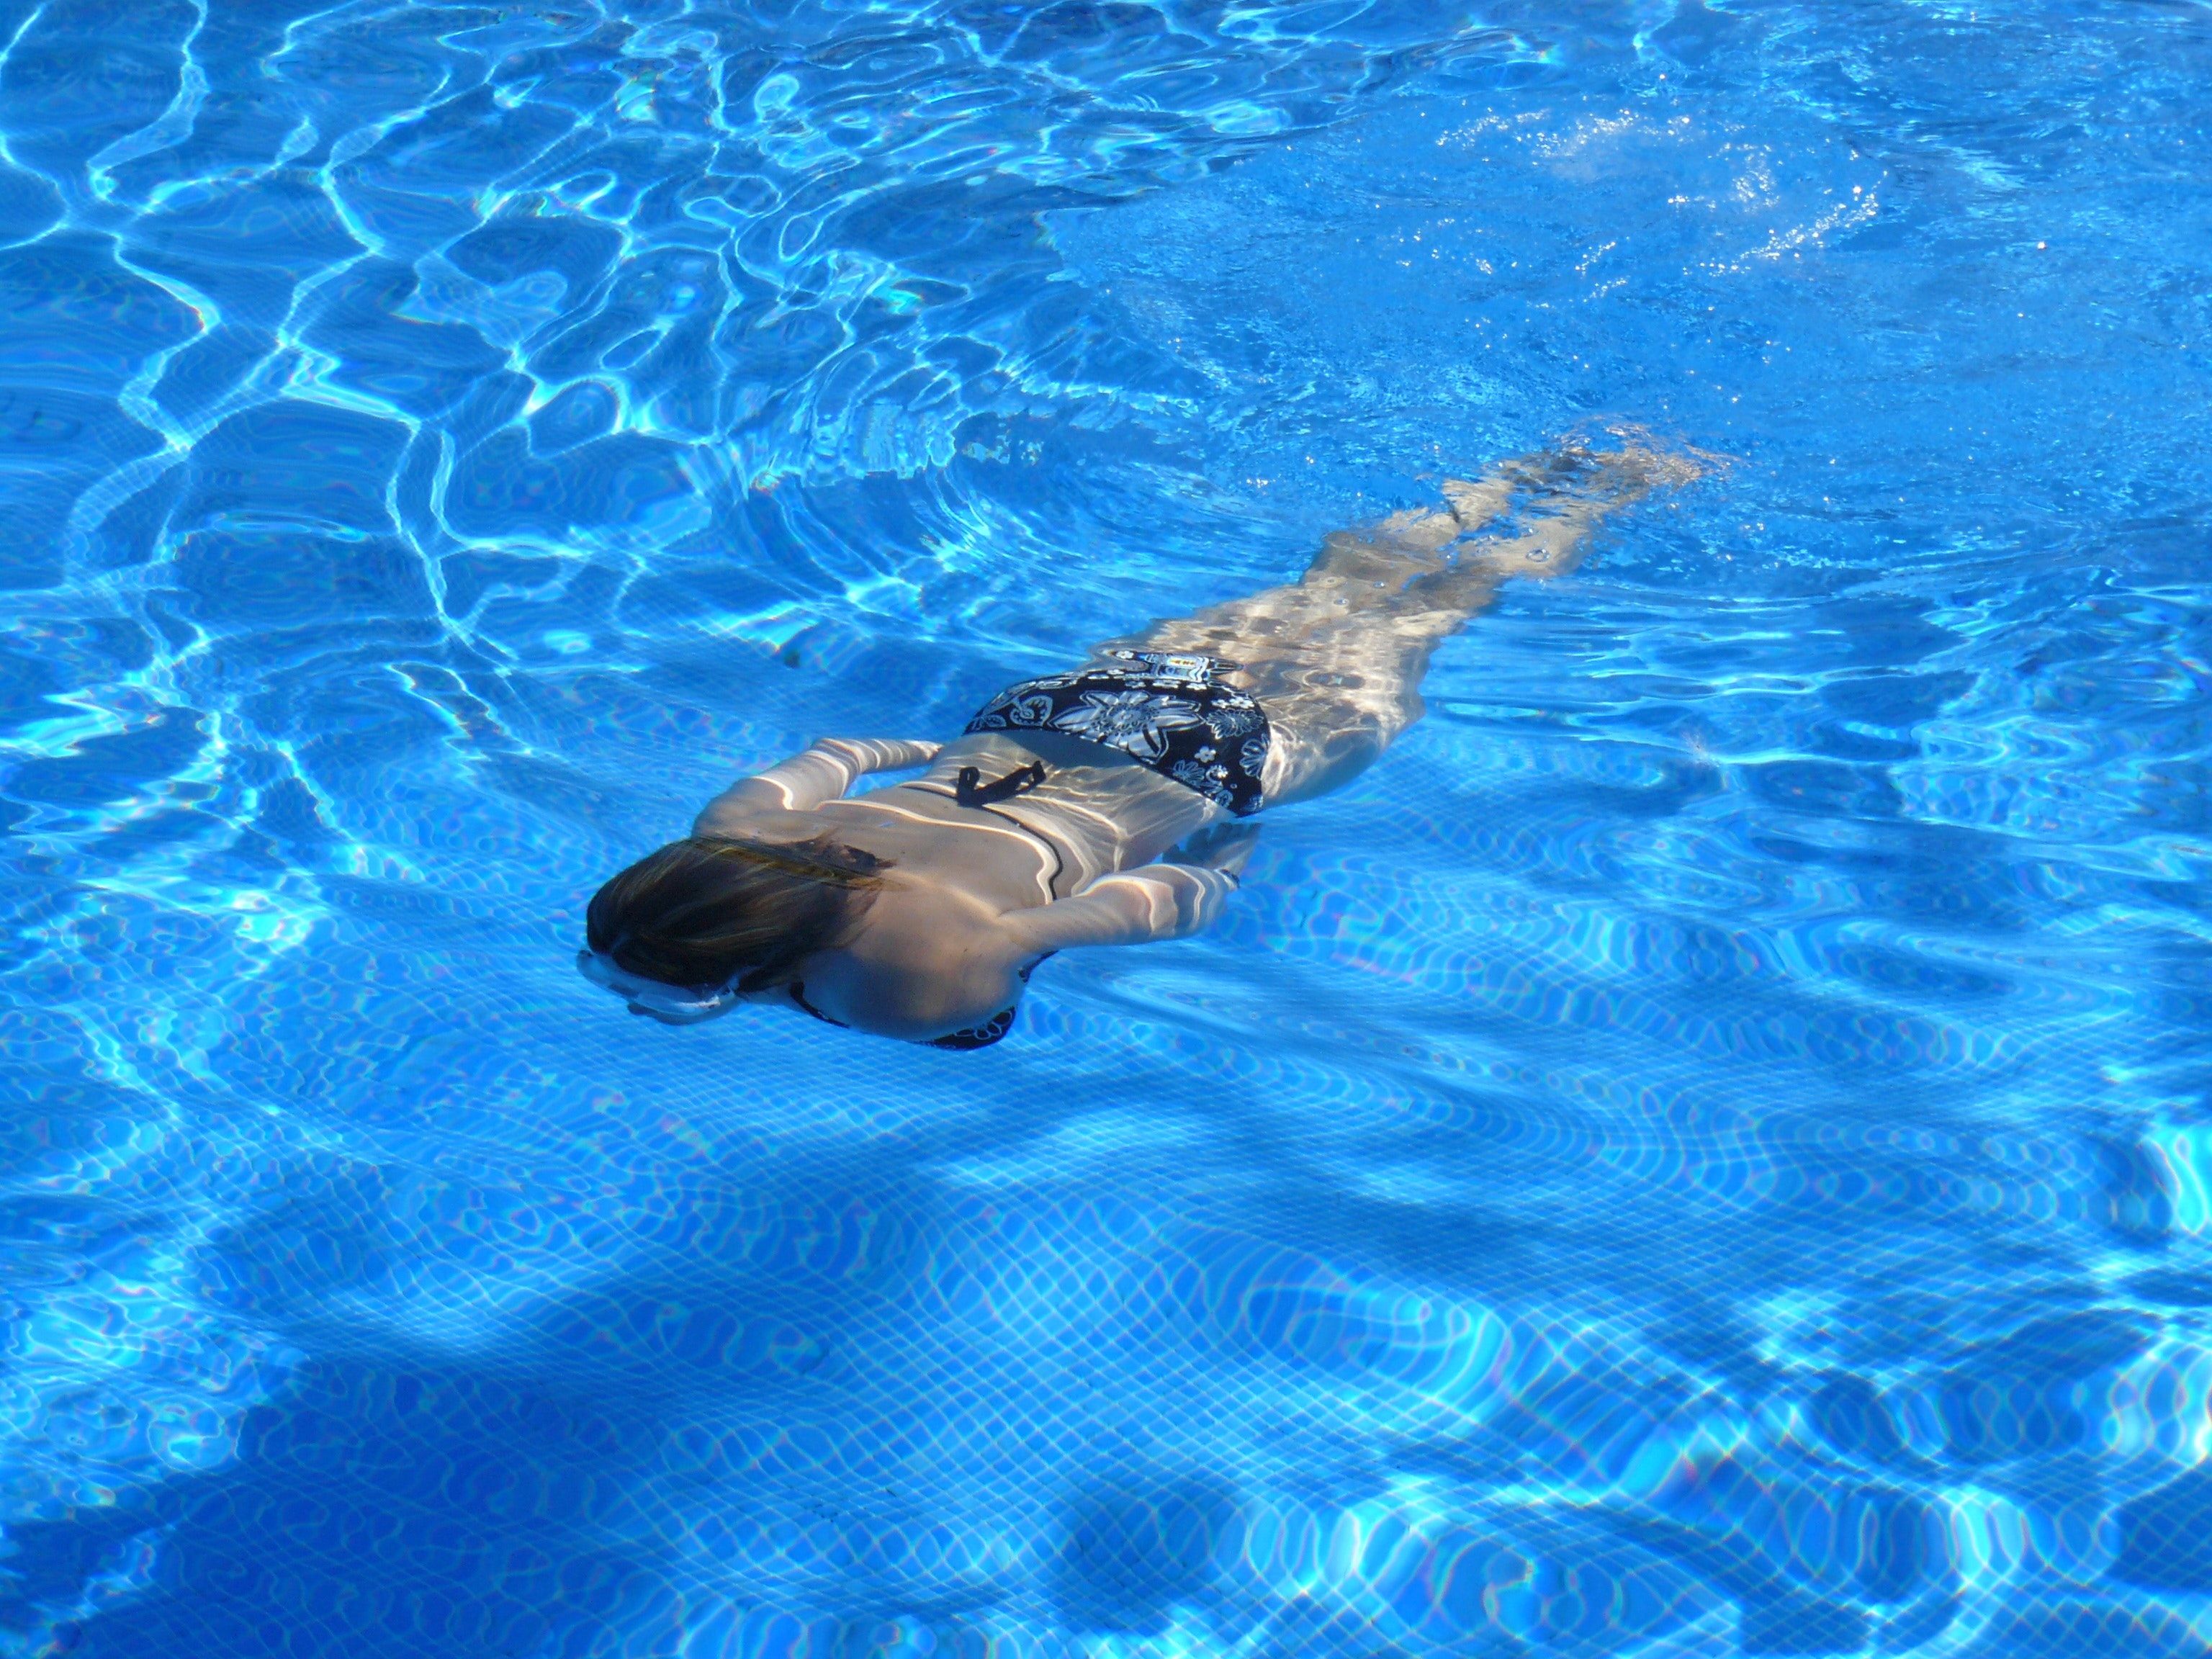 Beneficios de la natación: mujer en una piscina (Creative commons)